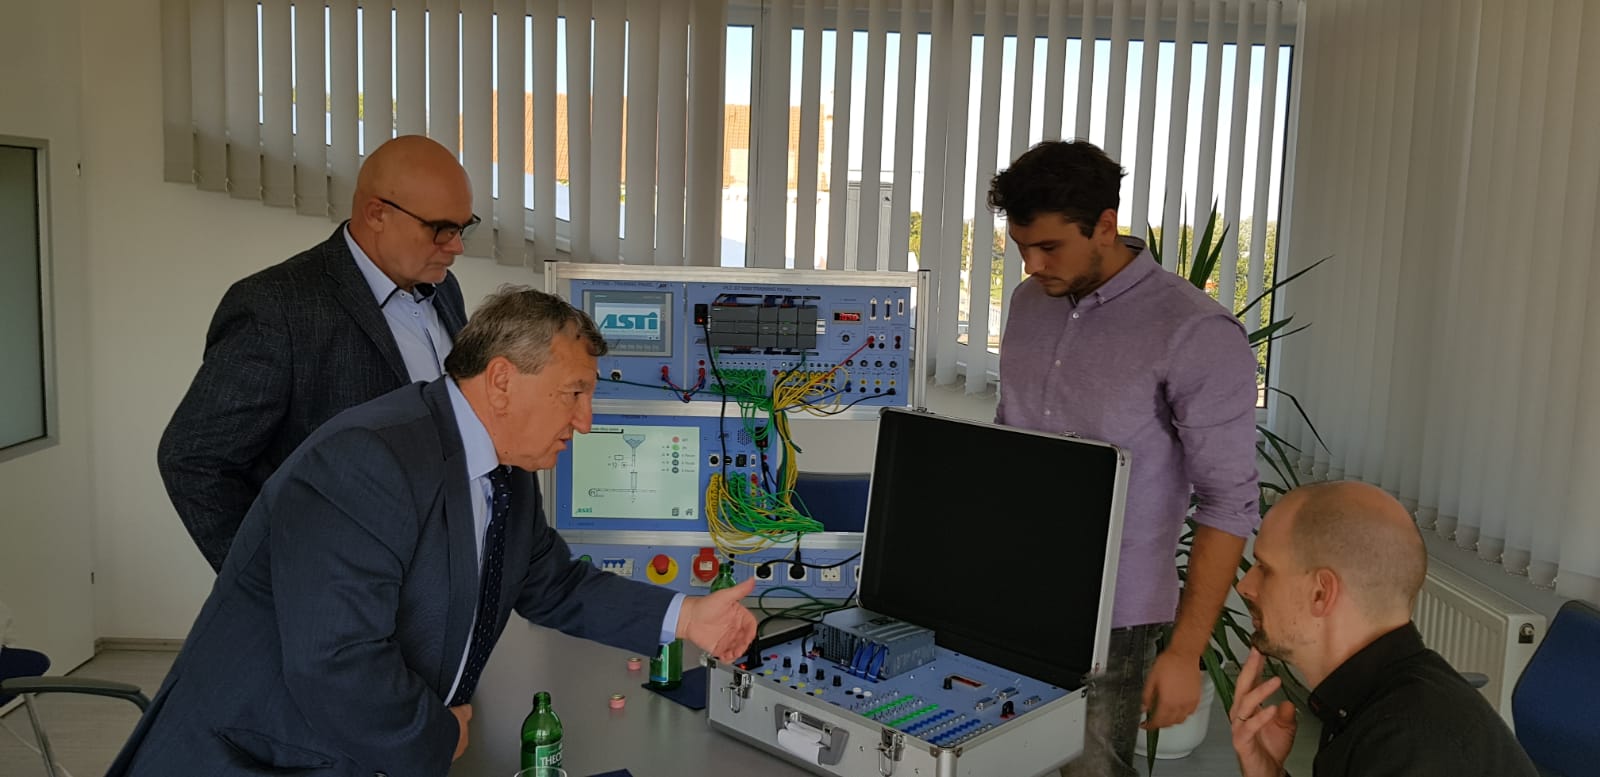 Asti Automation Romania cu Sabin Stamatescu si Teodor Presura la prezentare echipamente si tratative comerciale la sediul CPH KFT UNGARIA, domnii IFJ Eszterbauer Janos si Puha Imre 